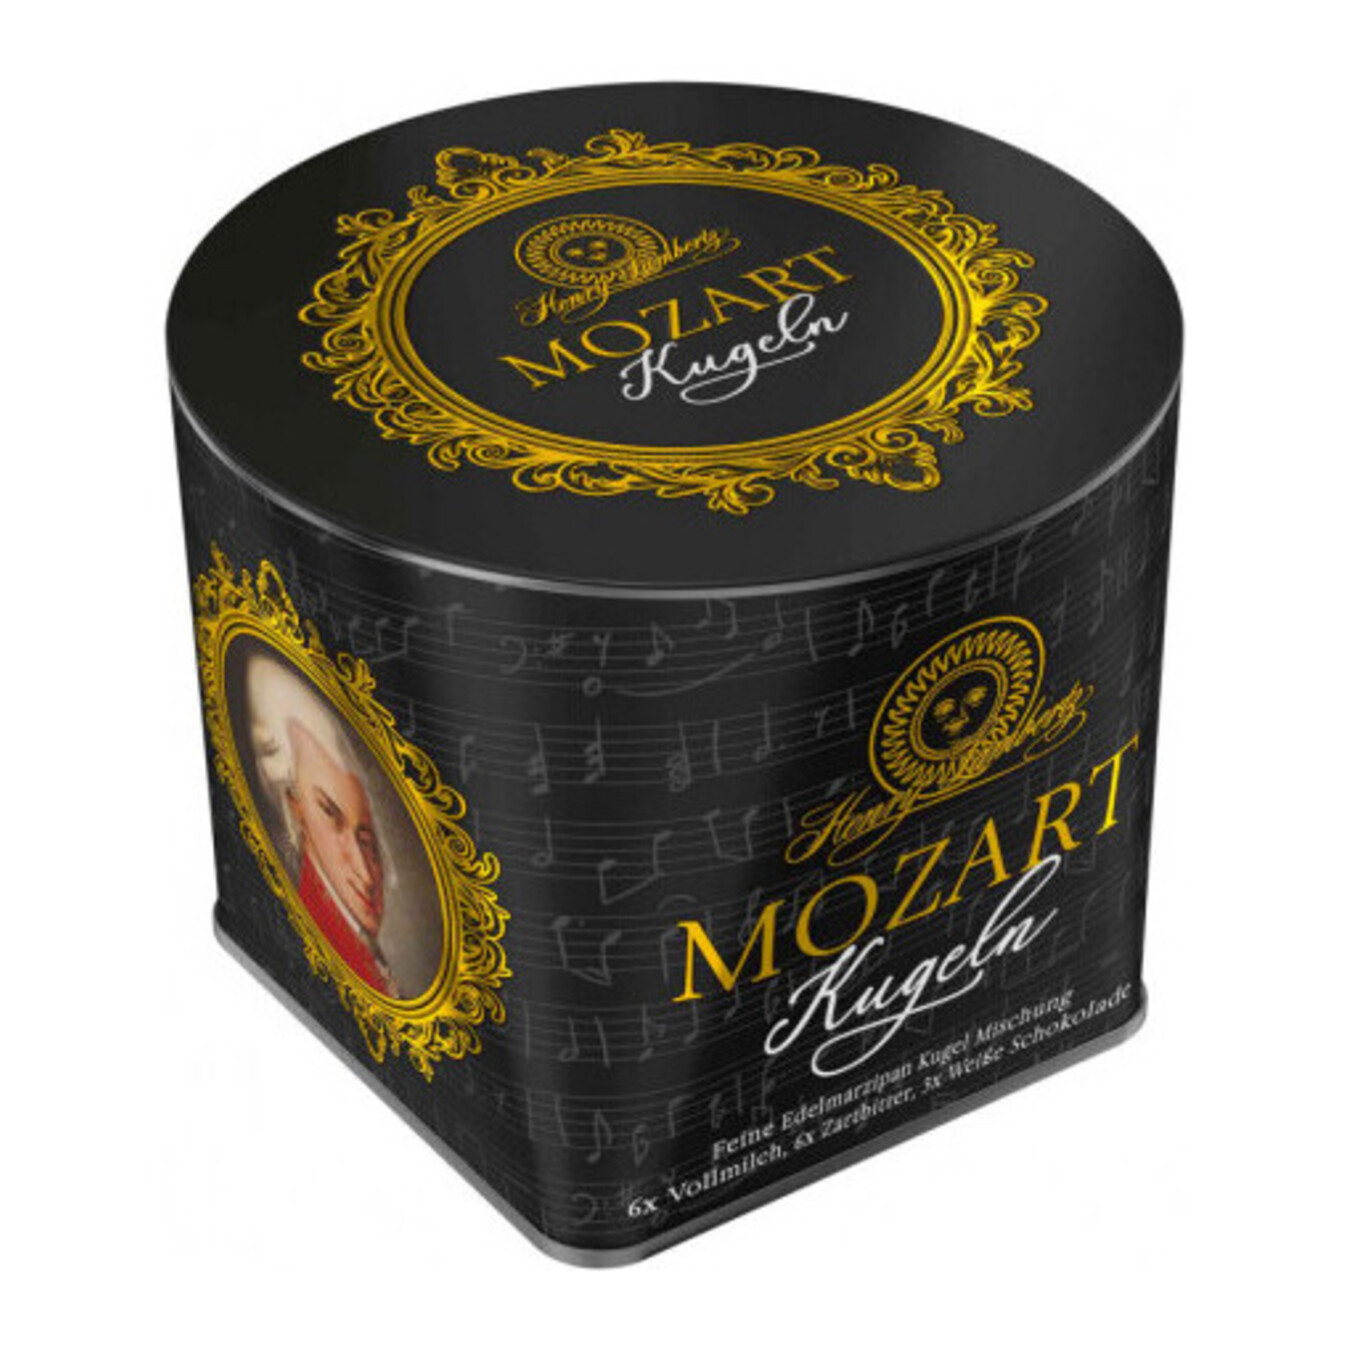 Конфеты Mozart пралине микс в жестяной коробке 300г